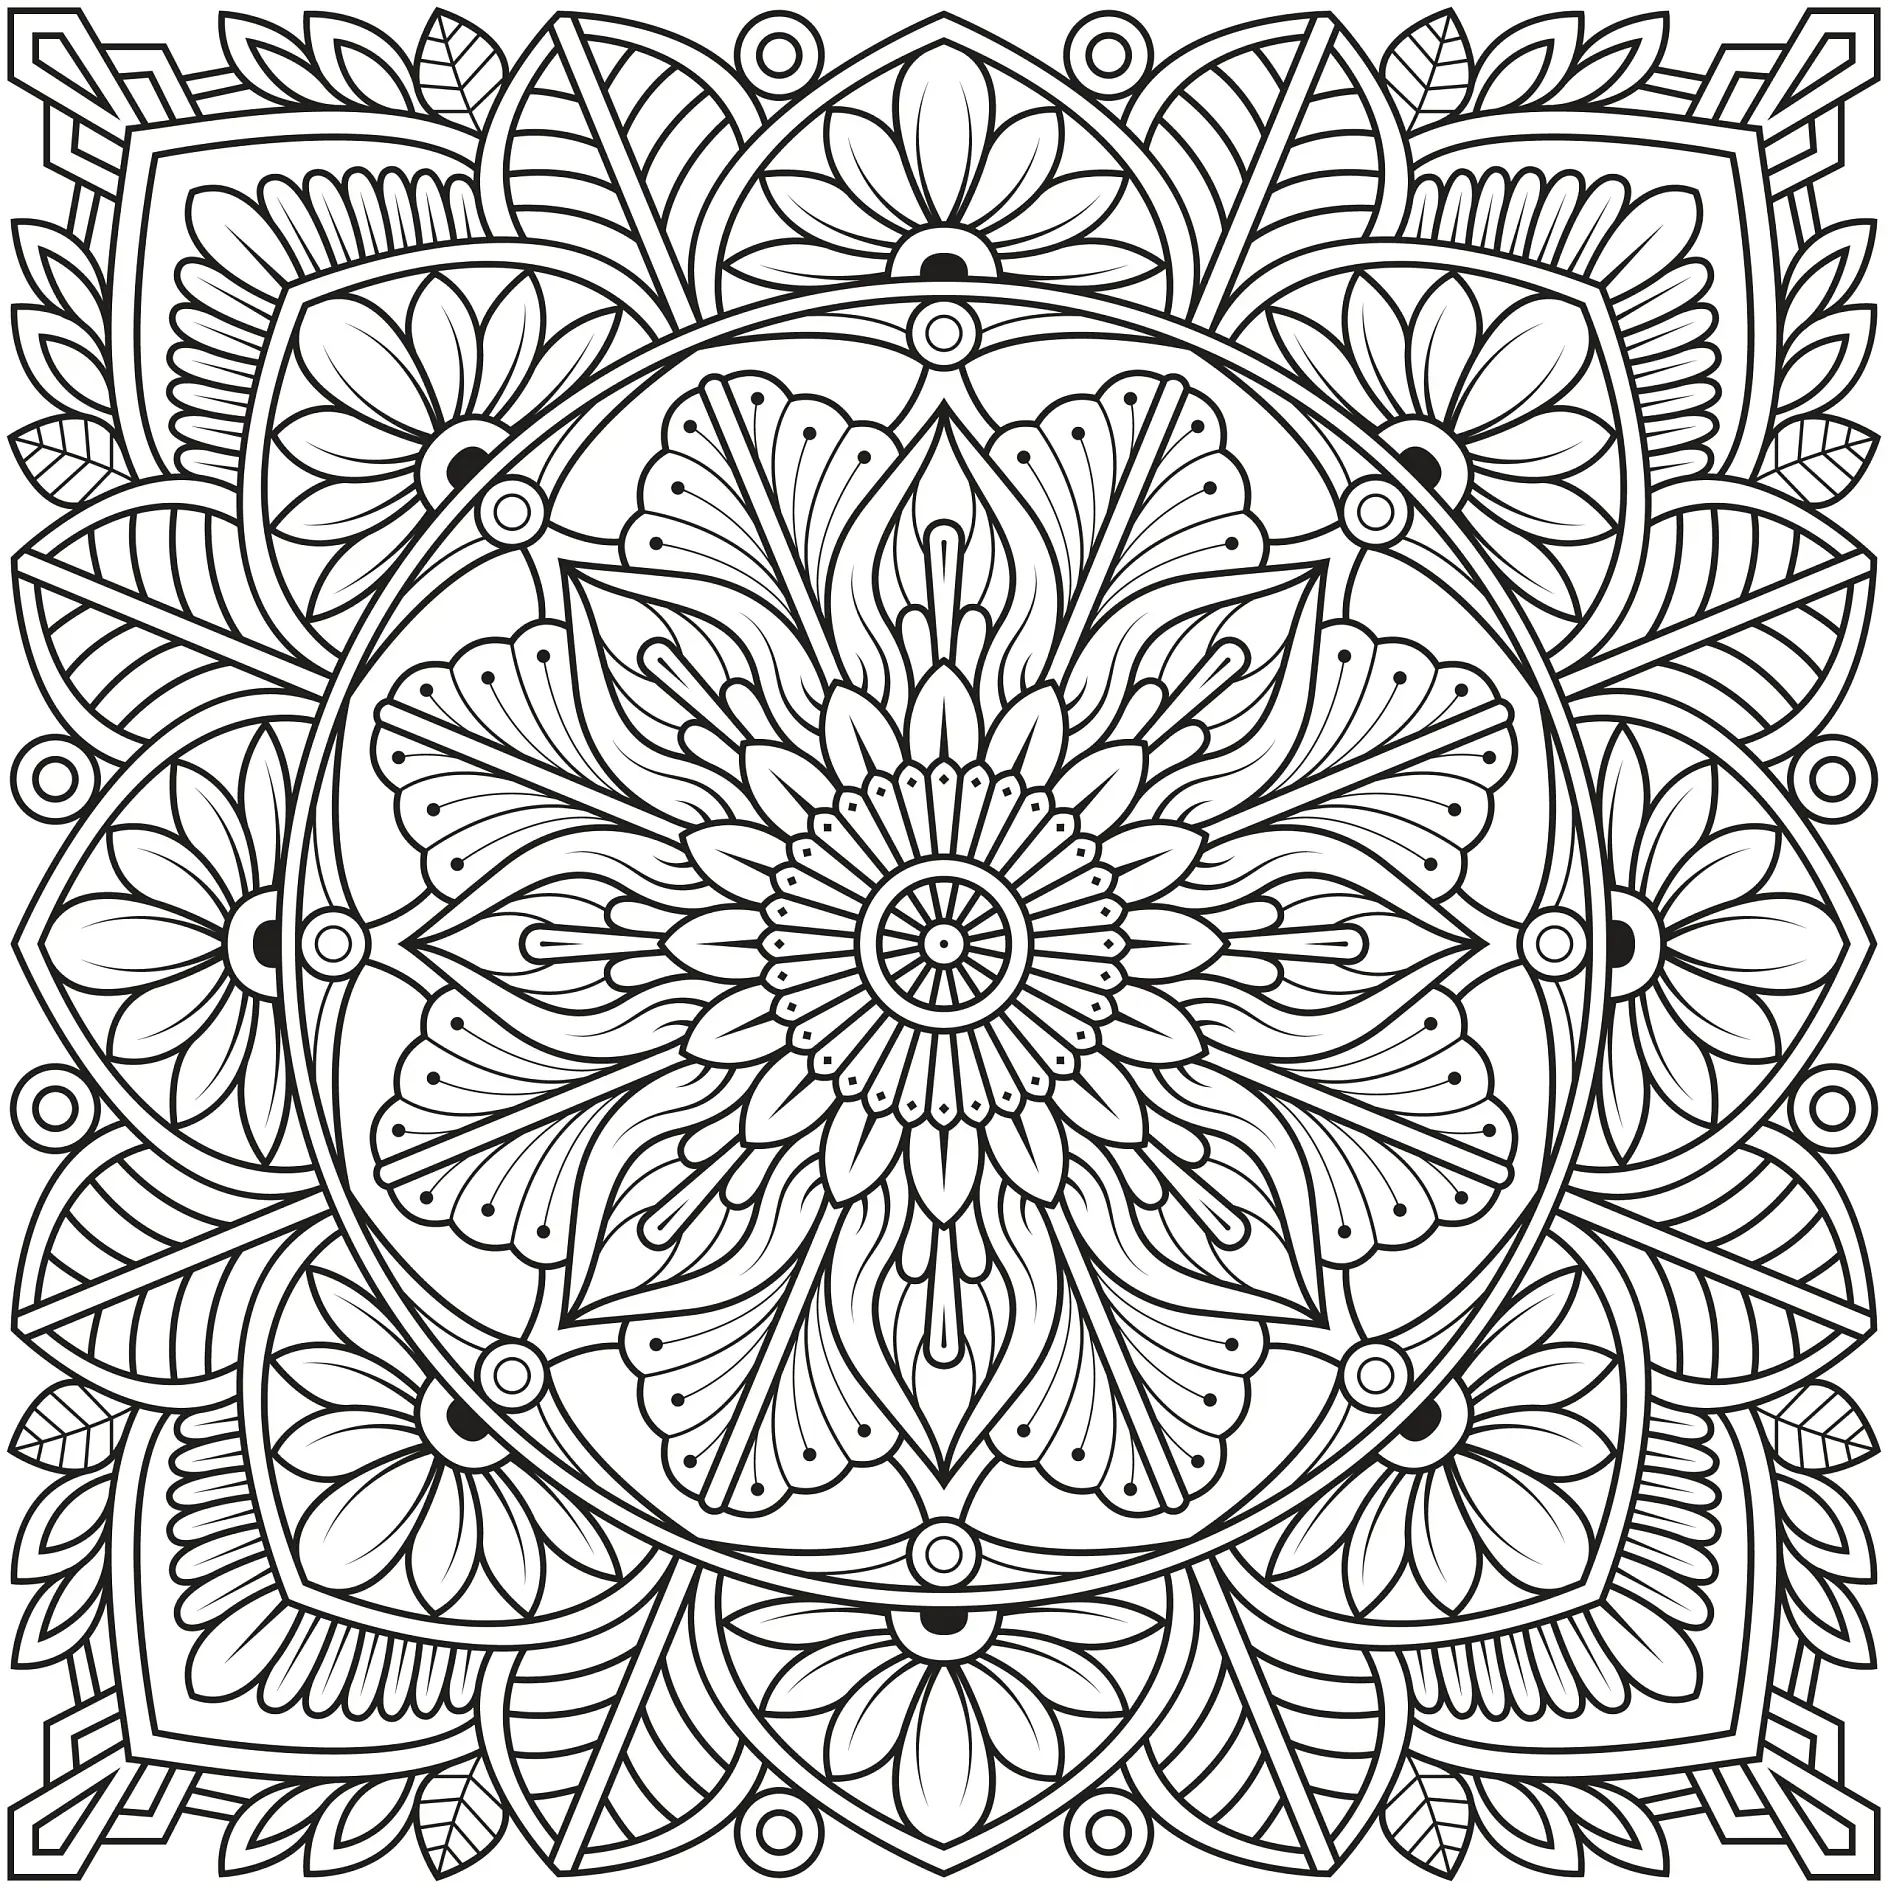 Ausmalbild Mandala mit Blumen und symmetrischen Blütenmustern